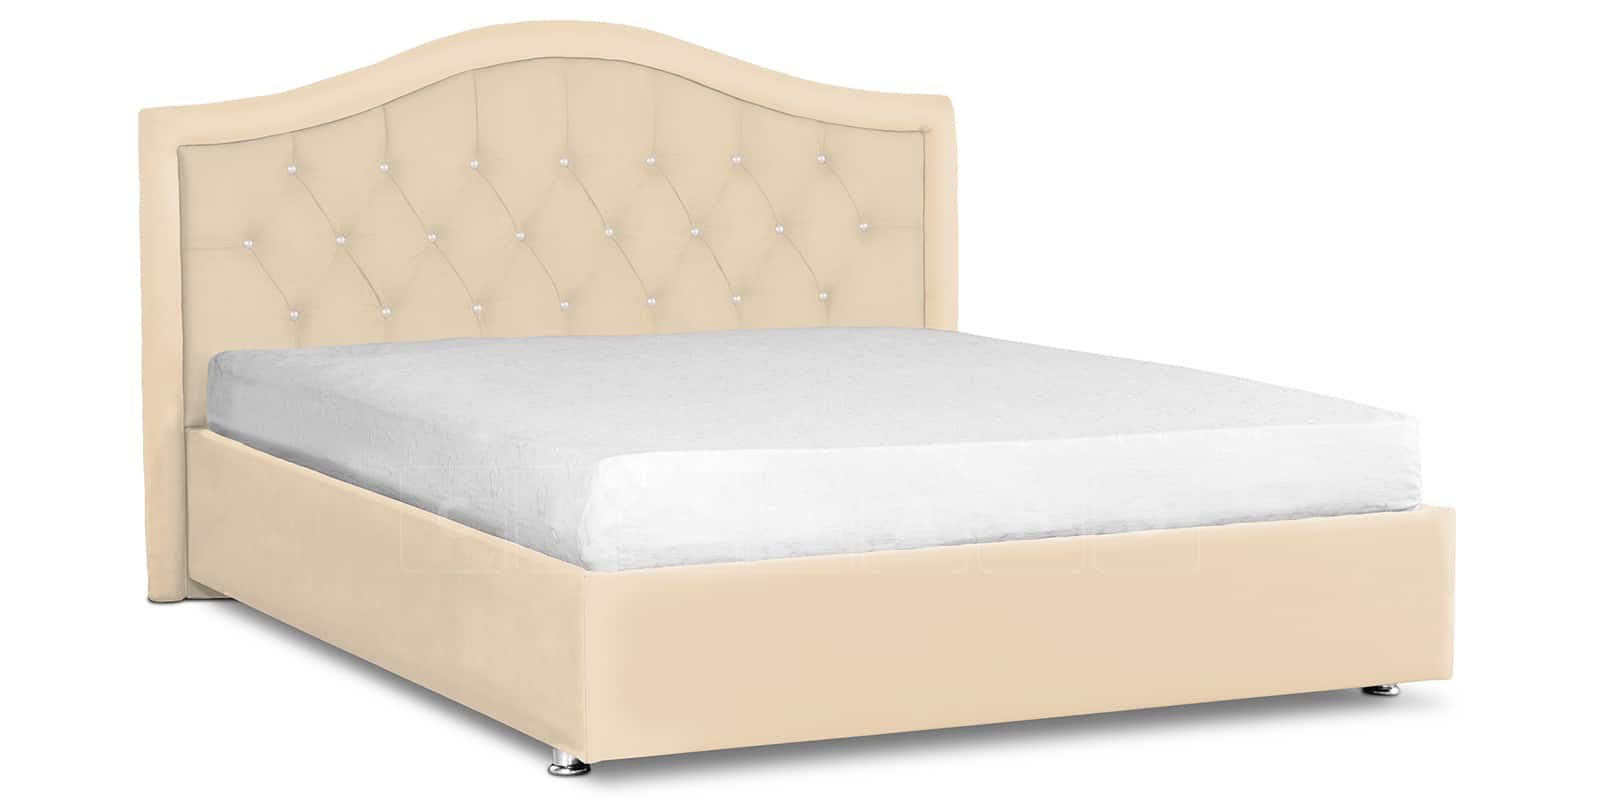 Мягкая кровать Малибу 160см экокожа бежевый вариант 9-2 фото 1 | интернет-магазин Складно